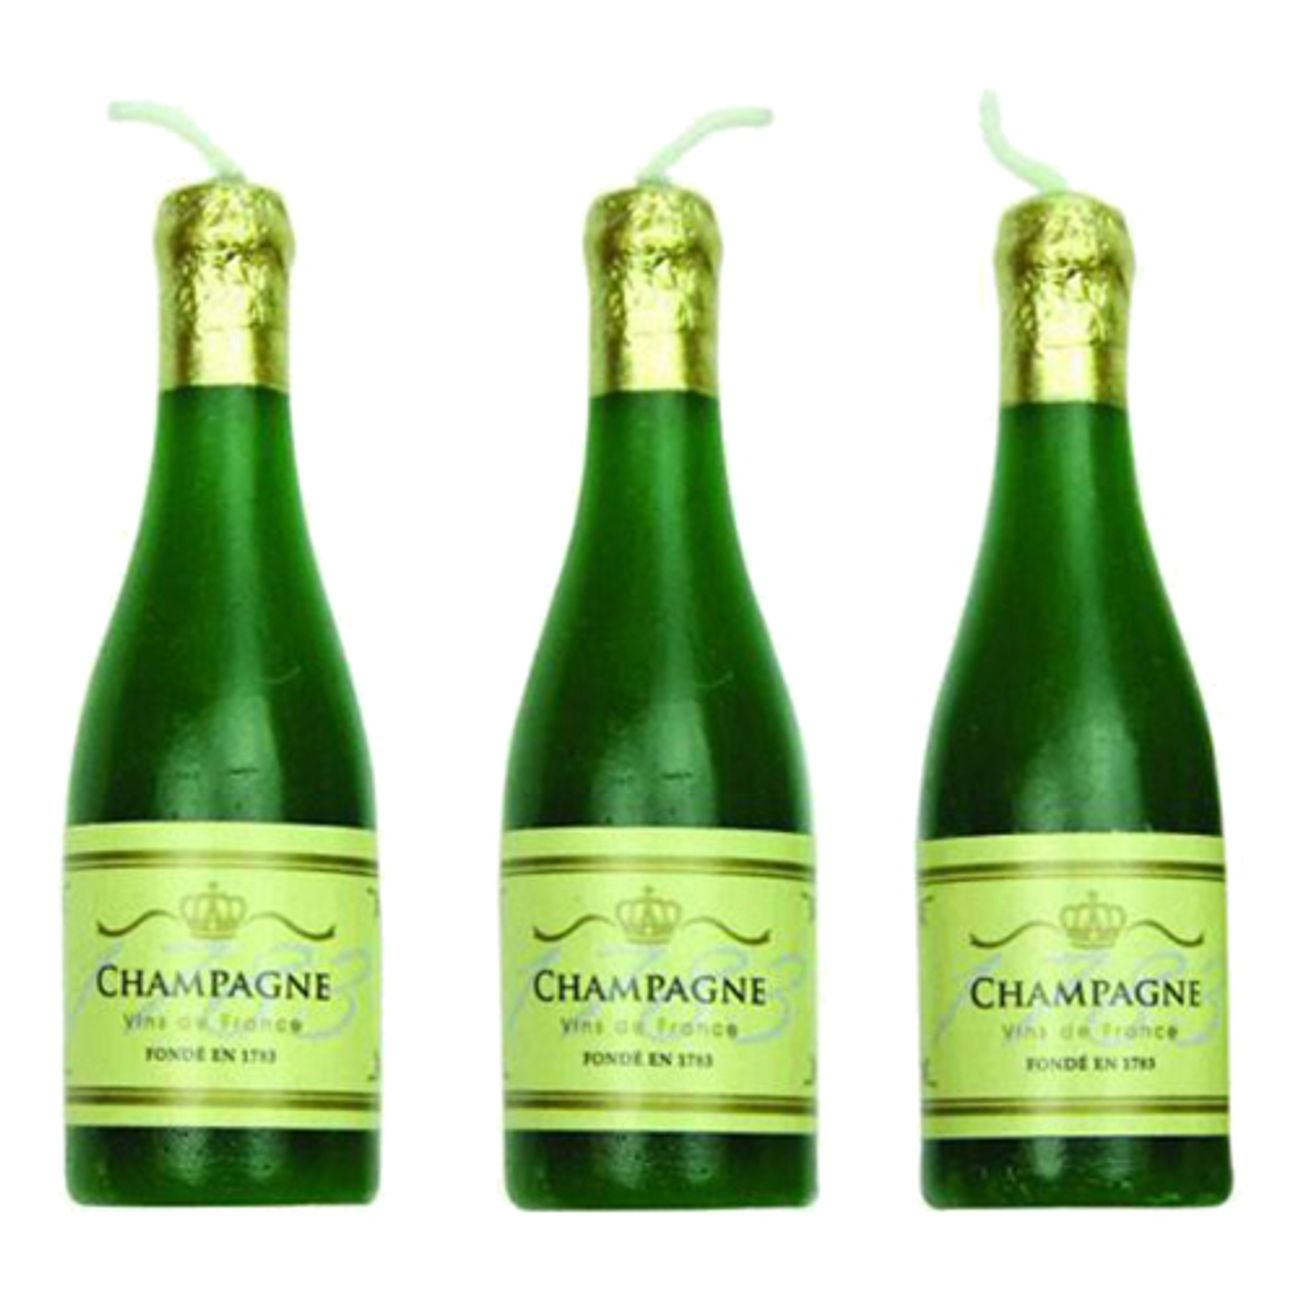 tartljus-champagneflaskor-1